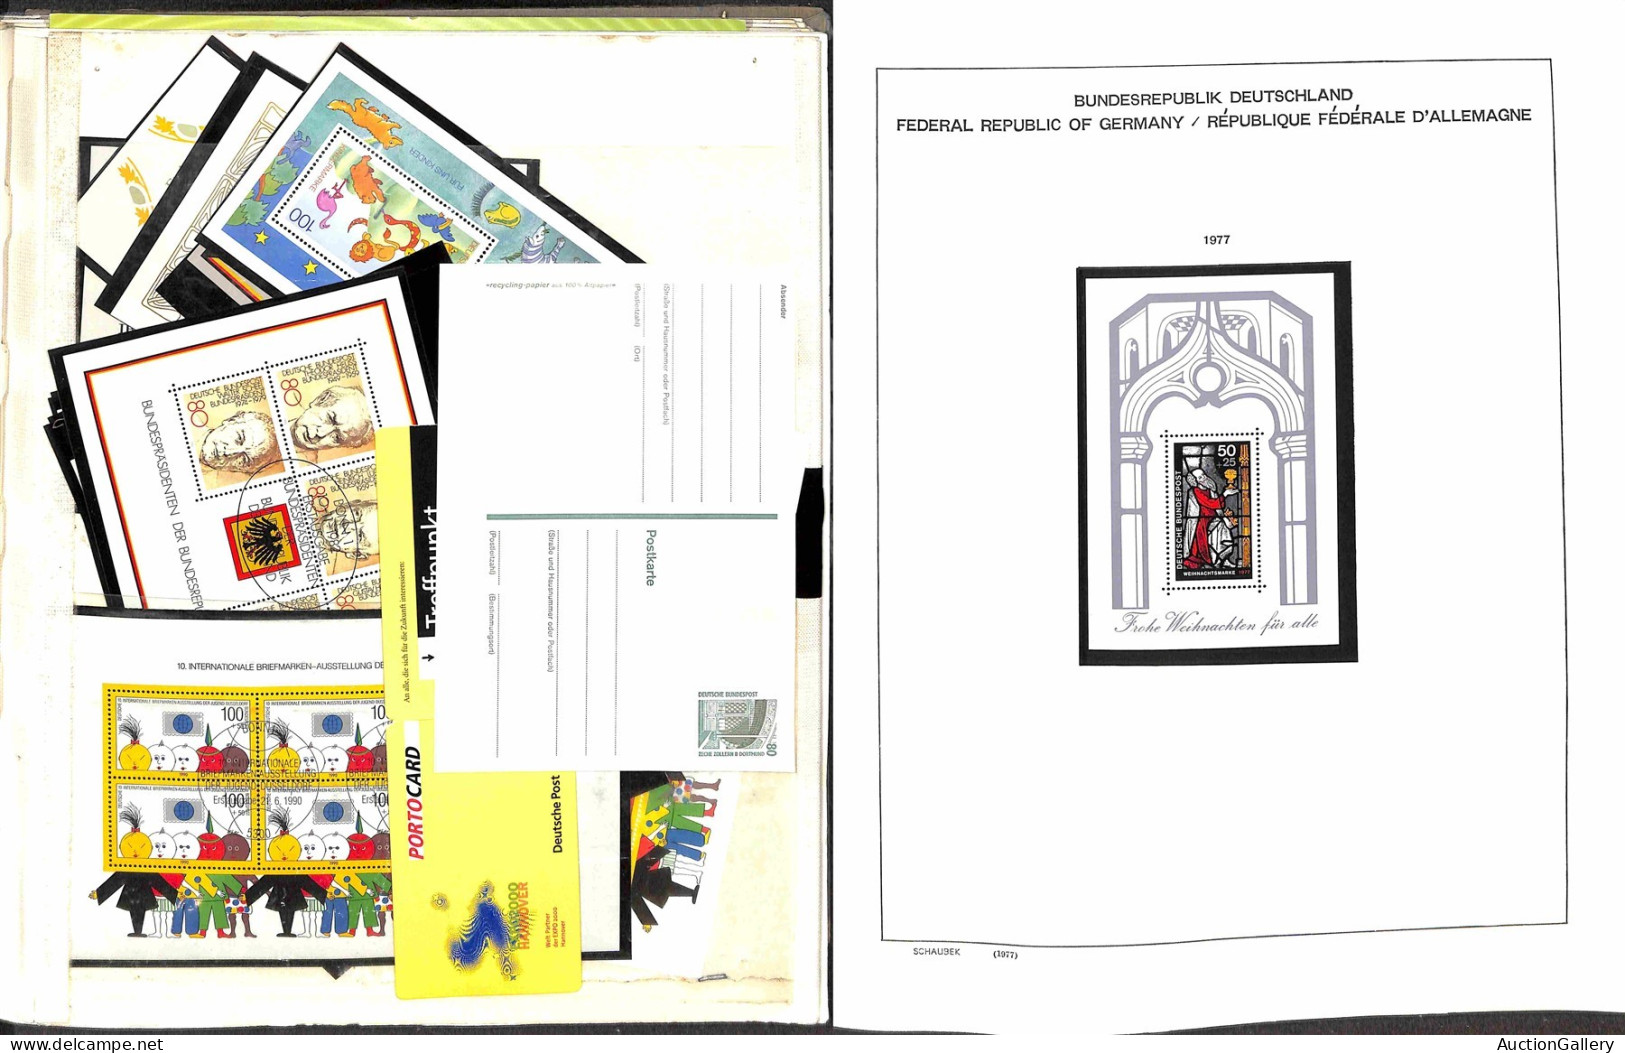 Lotti&Collezioni - Europa&Oltremare - GERMANIA FEDERALE - 1959/1997 - Collezione di oltre 90 foglietti nuovi e usati del